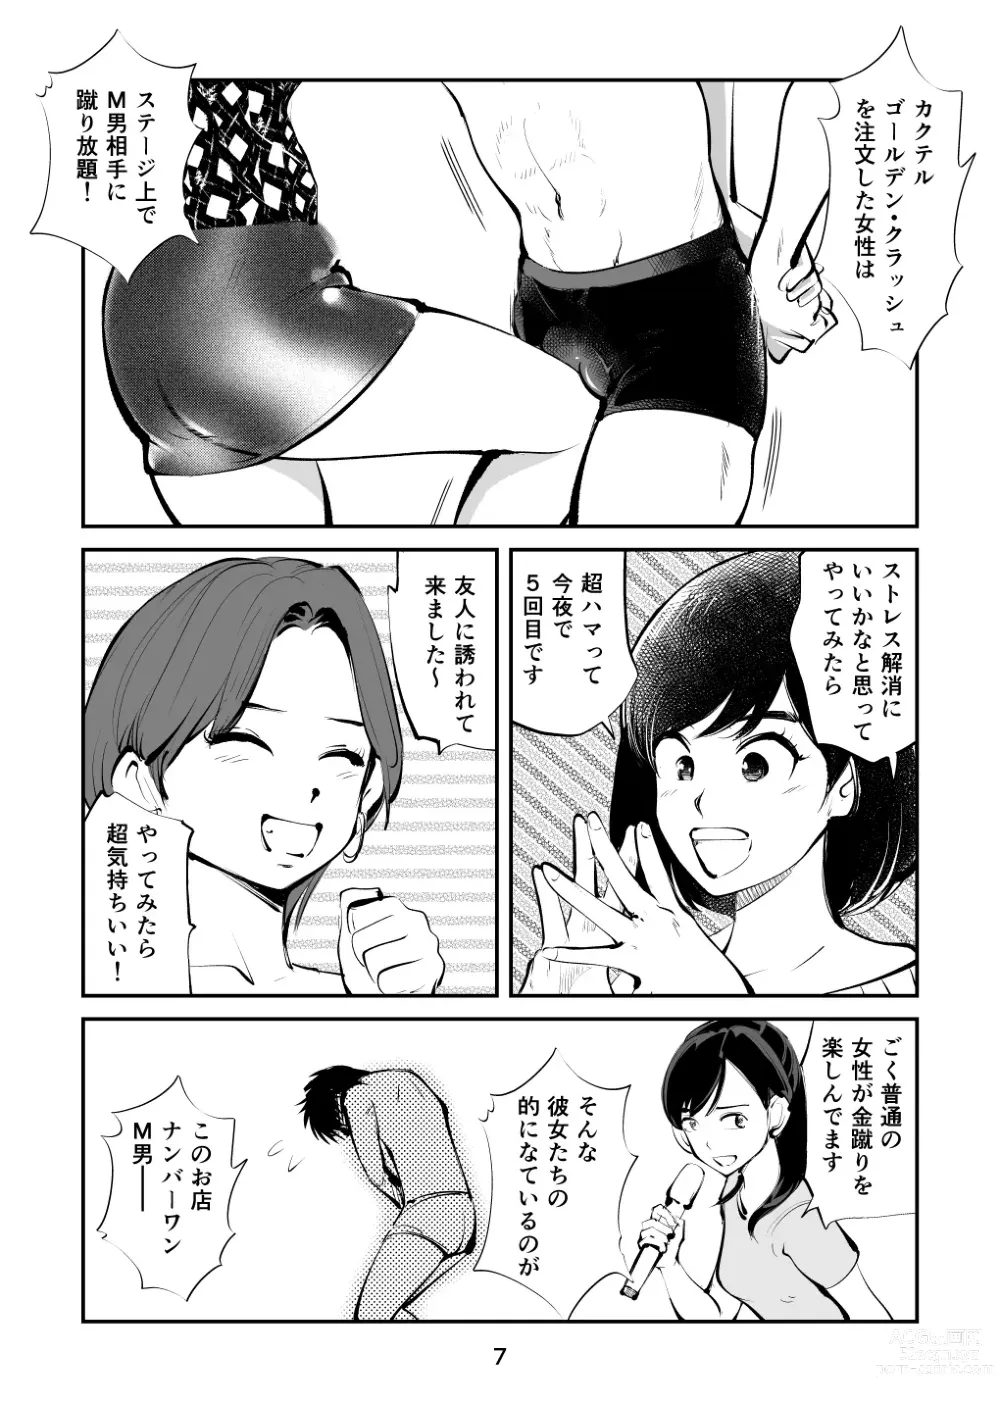 Page 7 of doujinshi Kintama o tsubushita joshi-ana